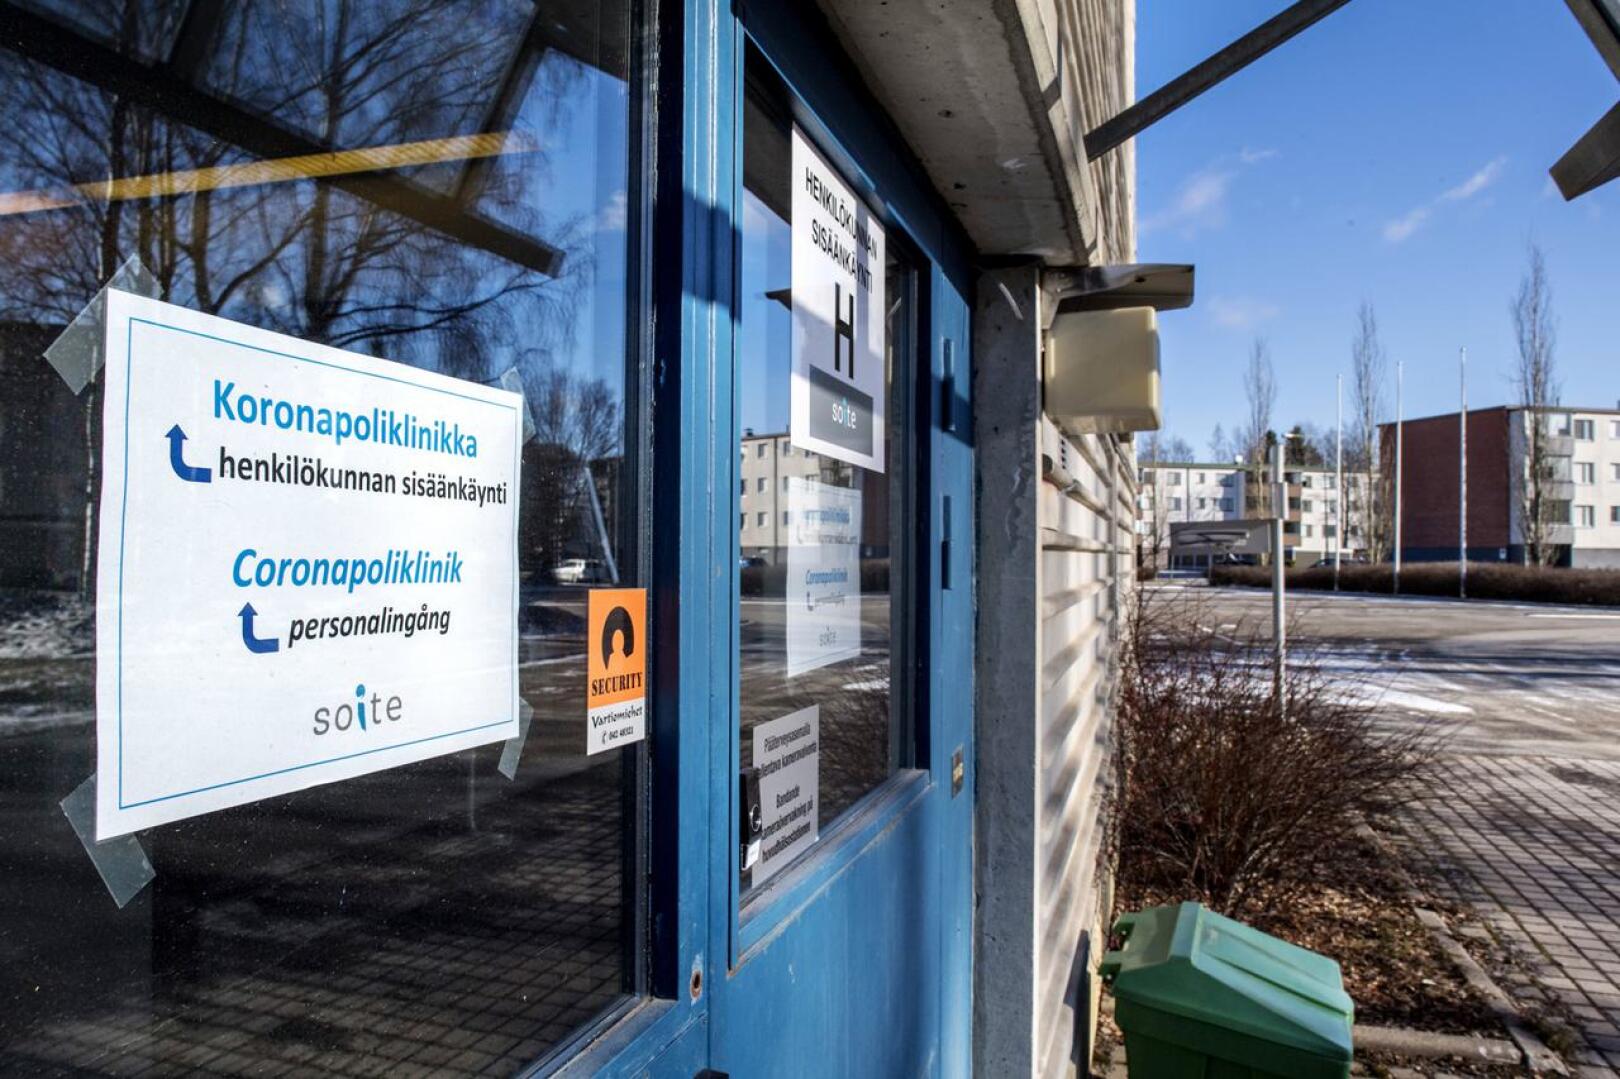 Soiten koronapoliklinikka sijaitsee Kokkolan pääterveysasemalla.